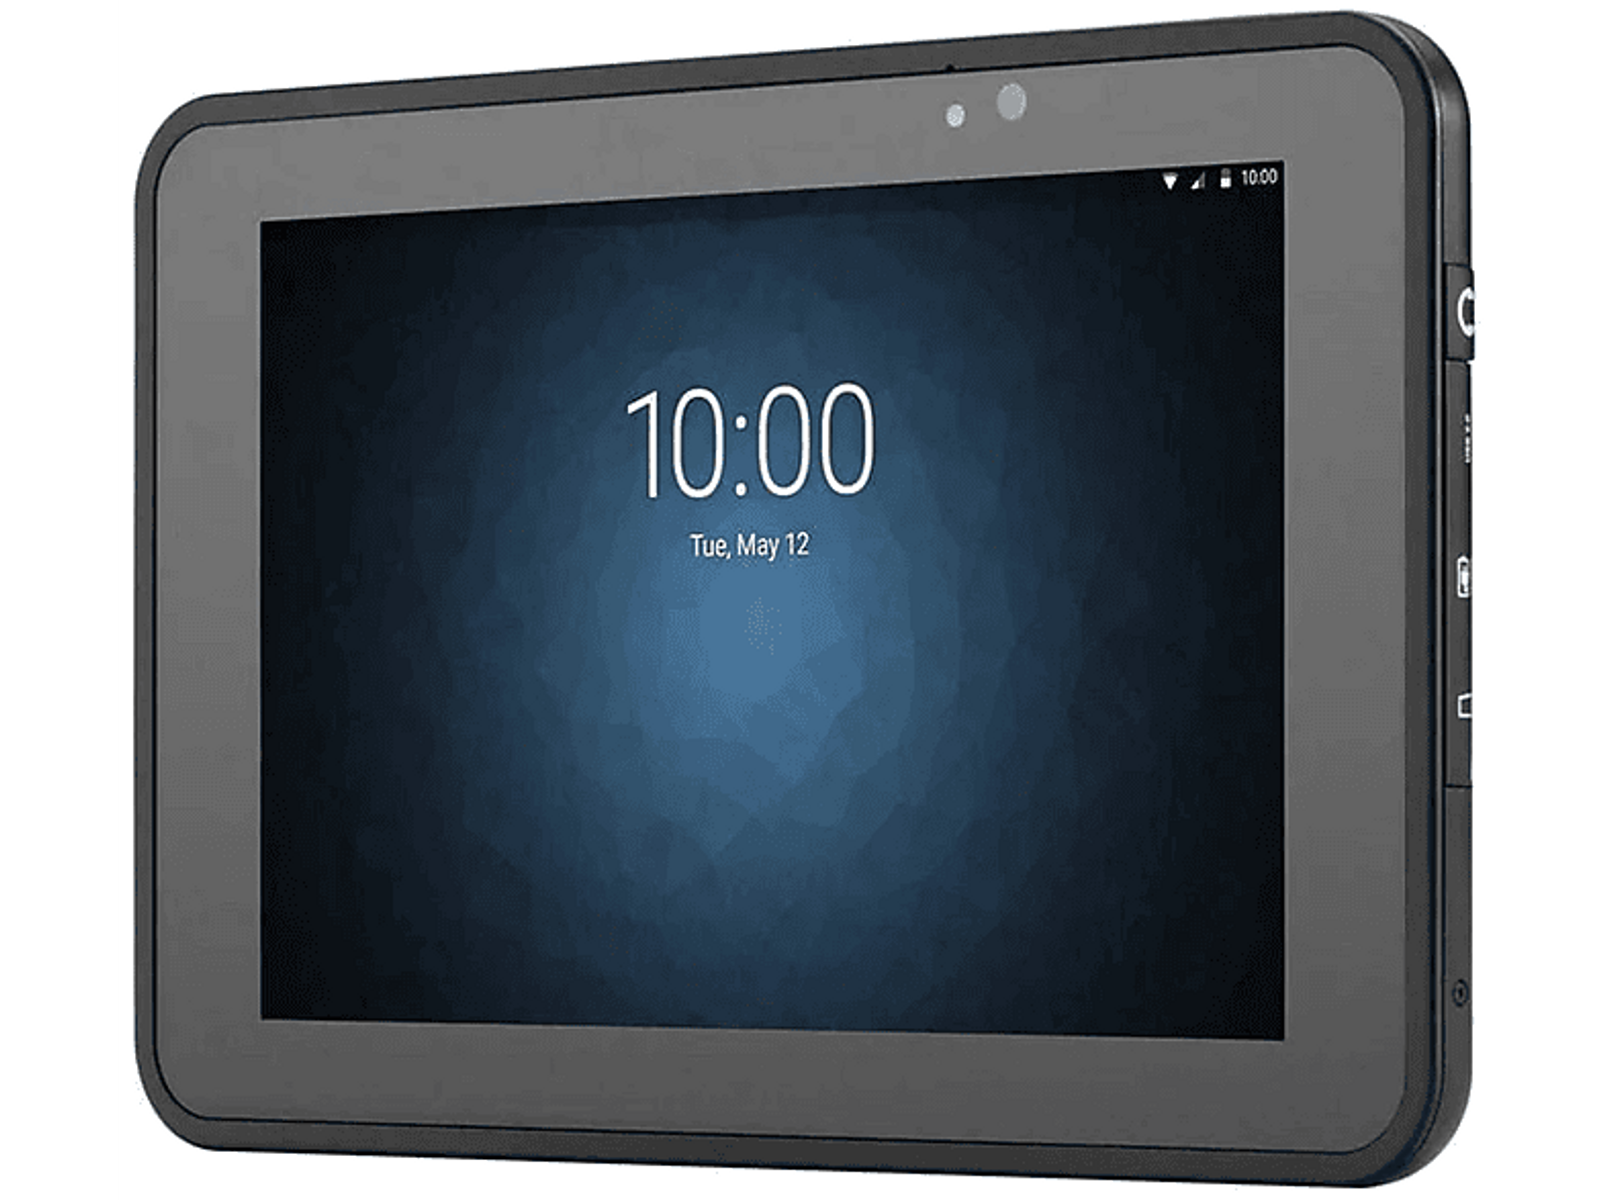 ZEBRA ET51AE-W12E, Tablet, 64 GB, Zoll, Schwarz 1,0